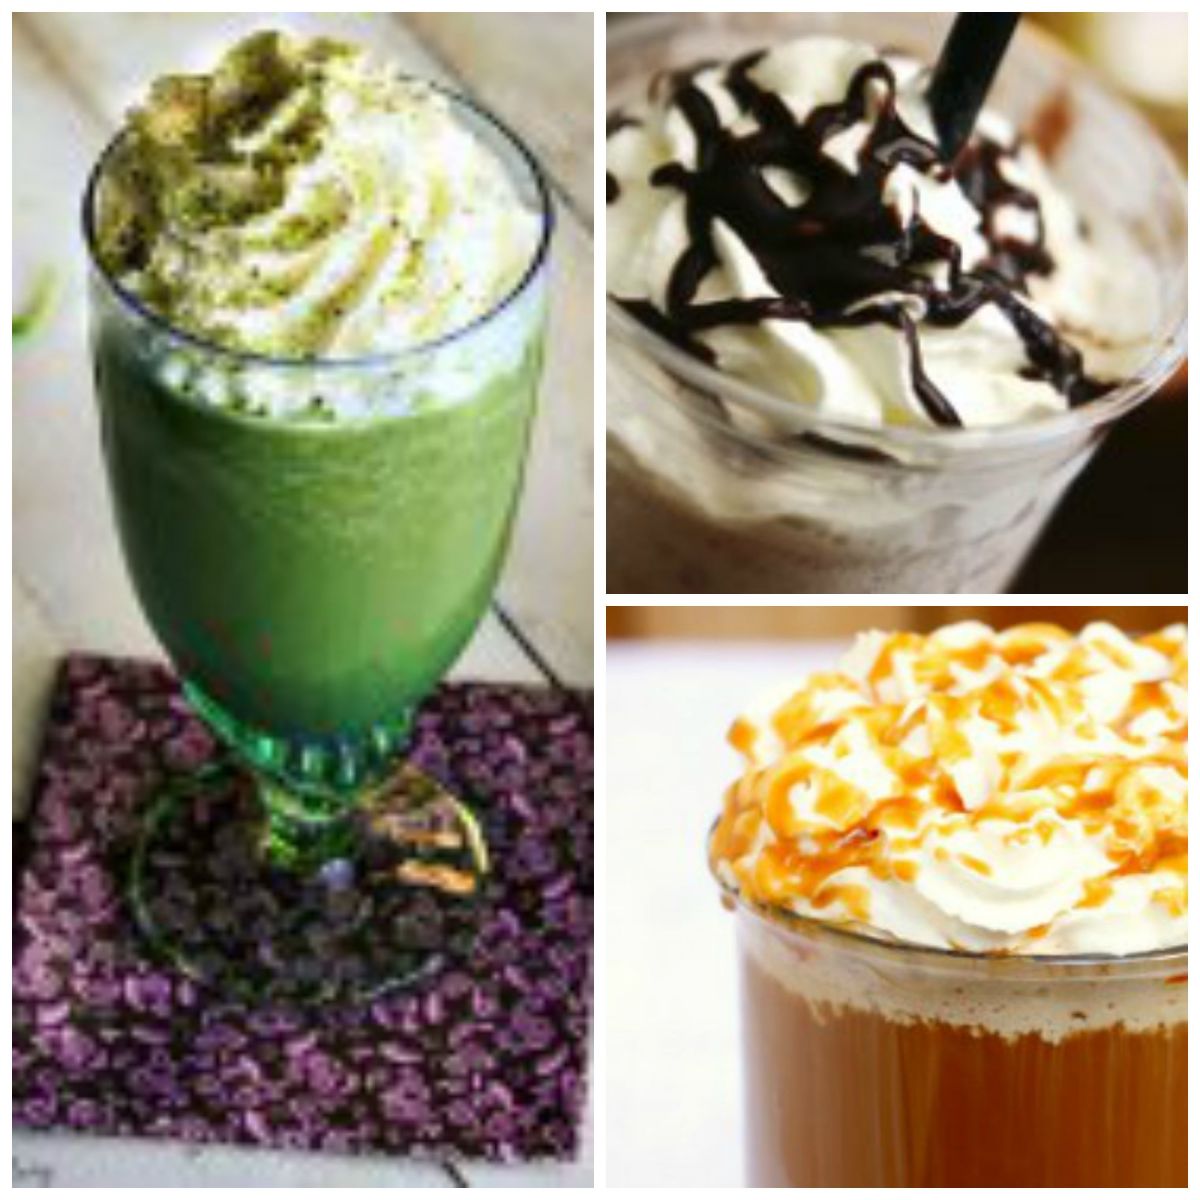 Copycat Green Tea Frappuccino + More Coffee Drink Recipes